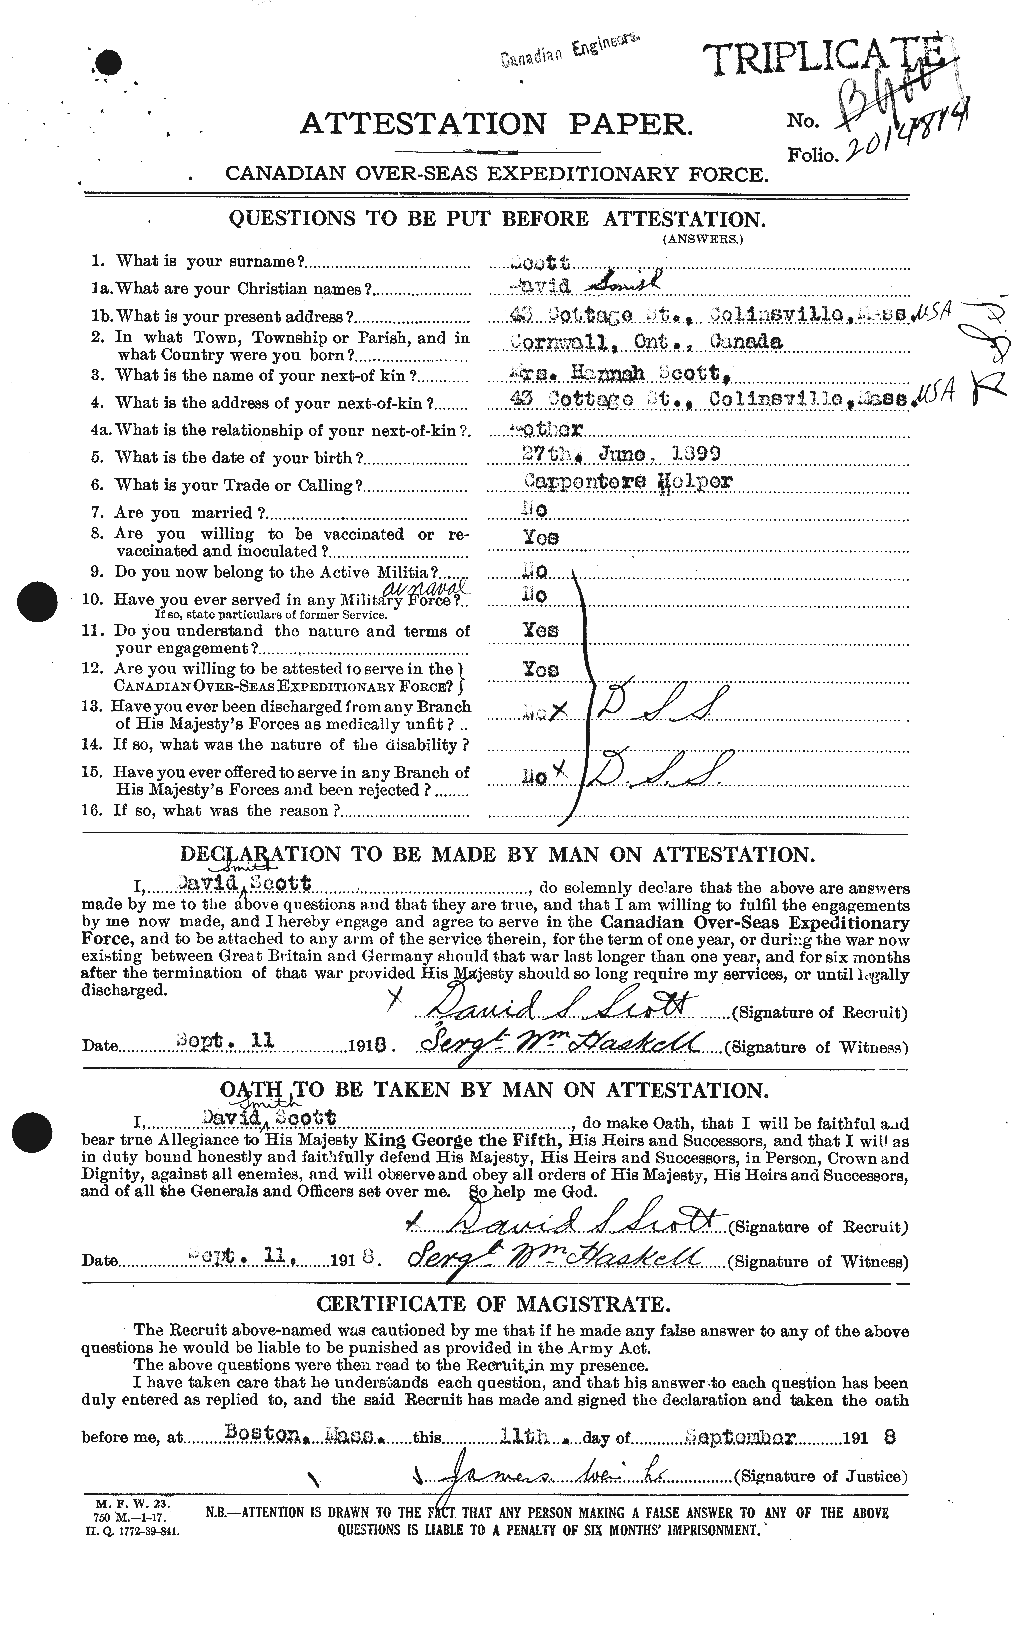 Dossiers du Personnel de la Première Guerre mondiale - CEC 085370a